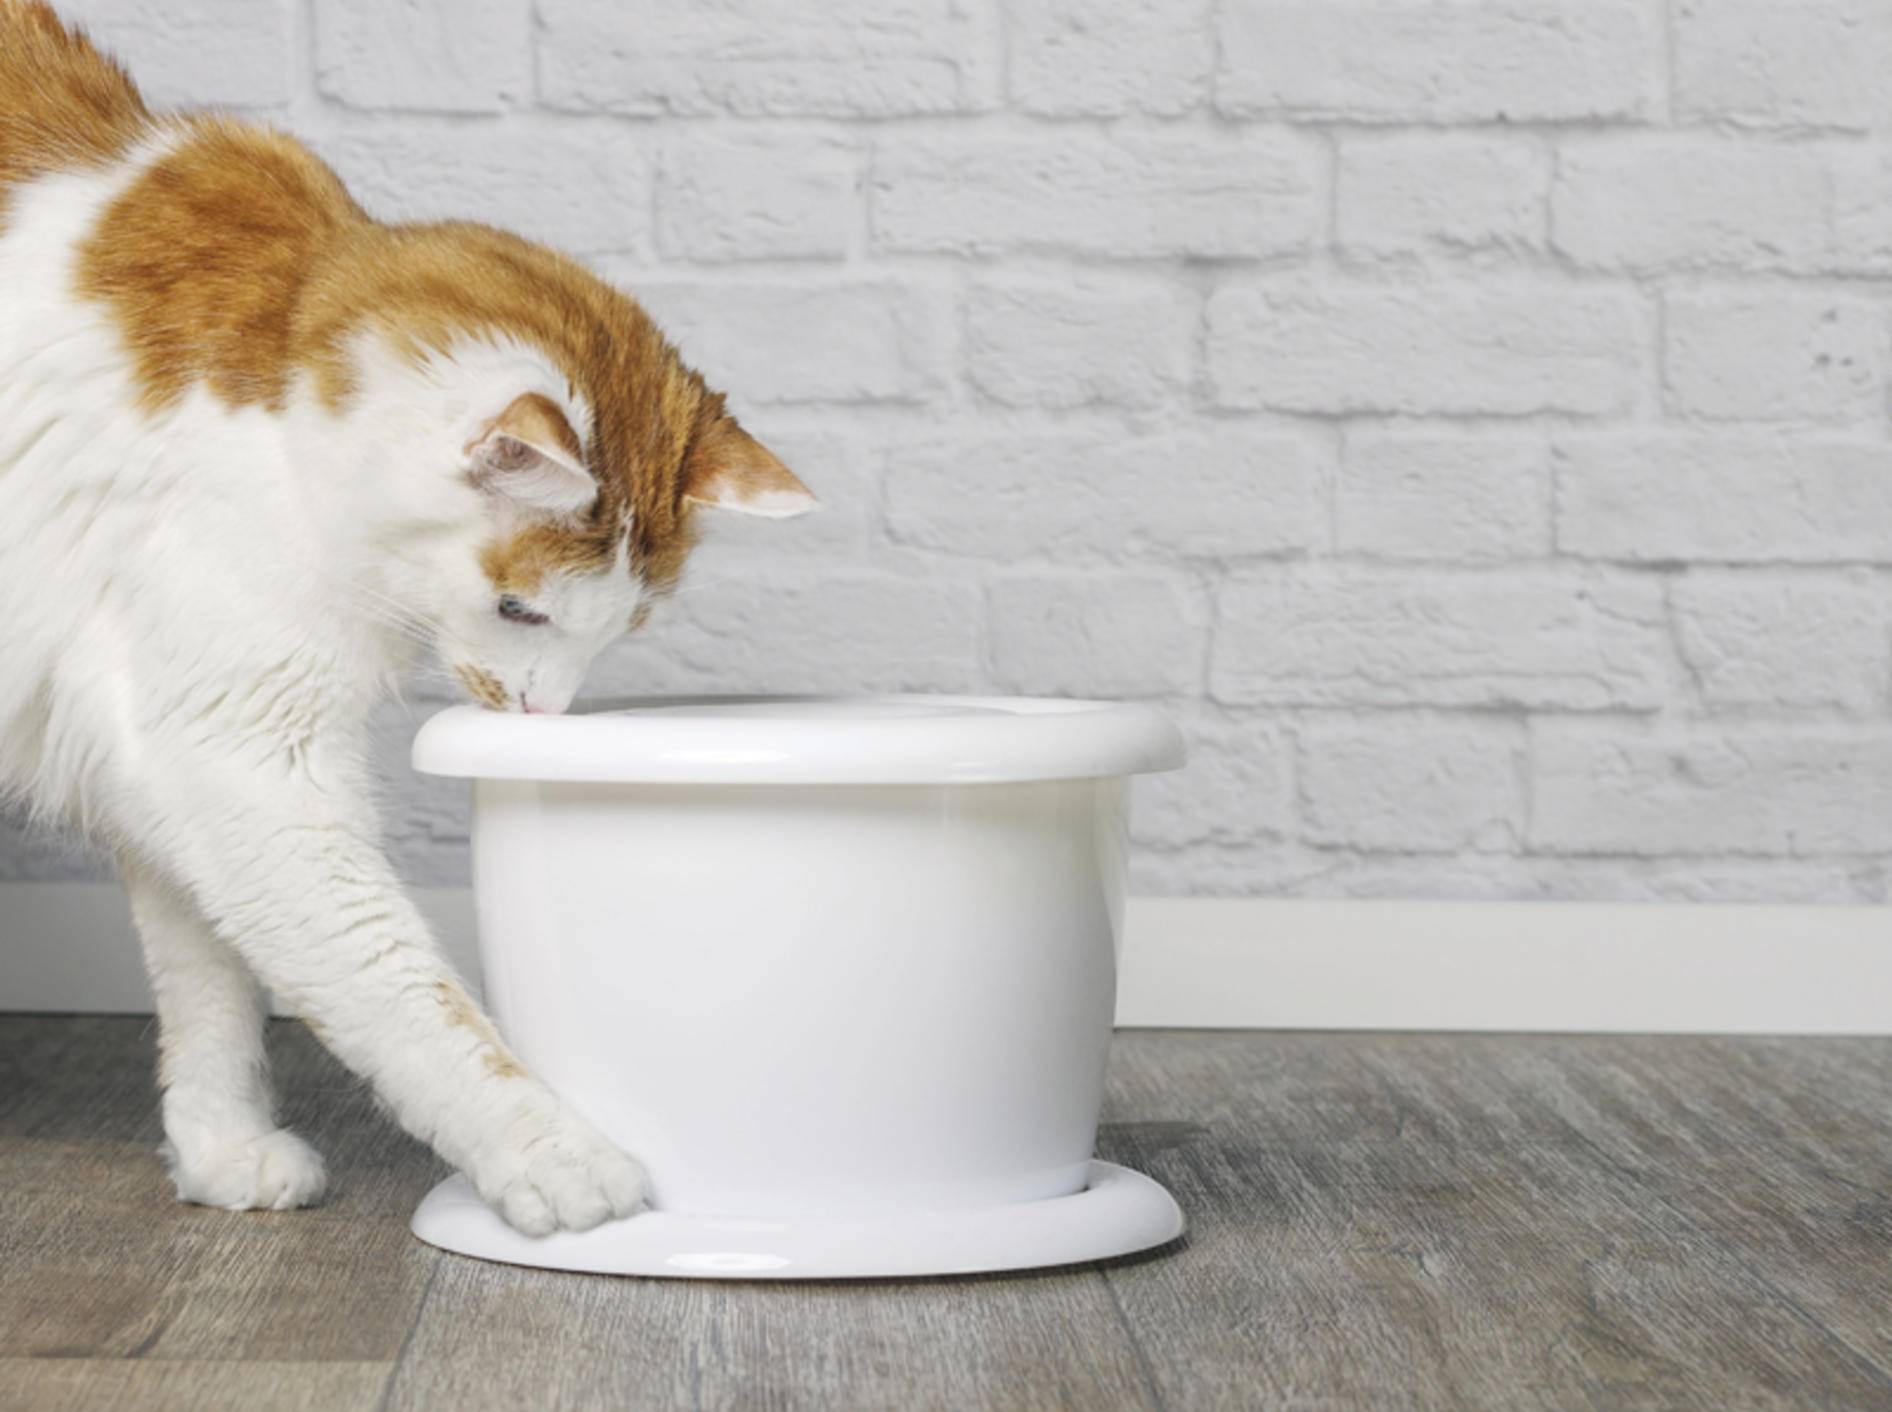 Fließend Wasser aus dem Trinkbrunnen für Ihre Katze - Bild: Shutterstock / Lightspruch